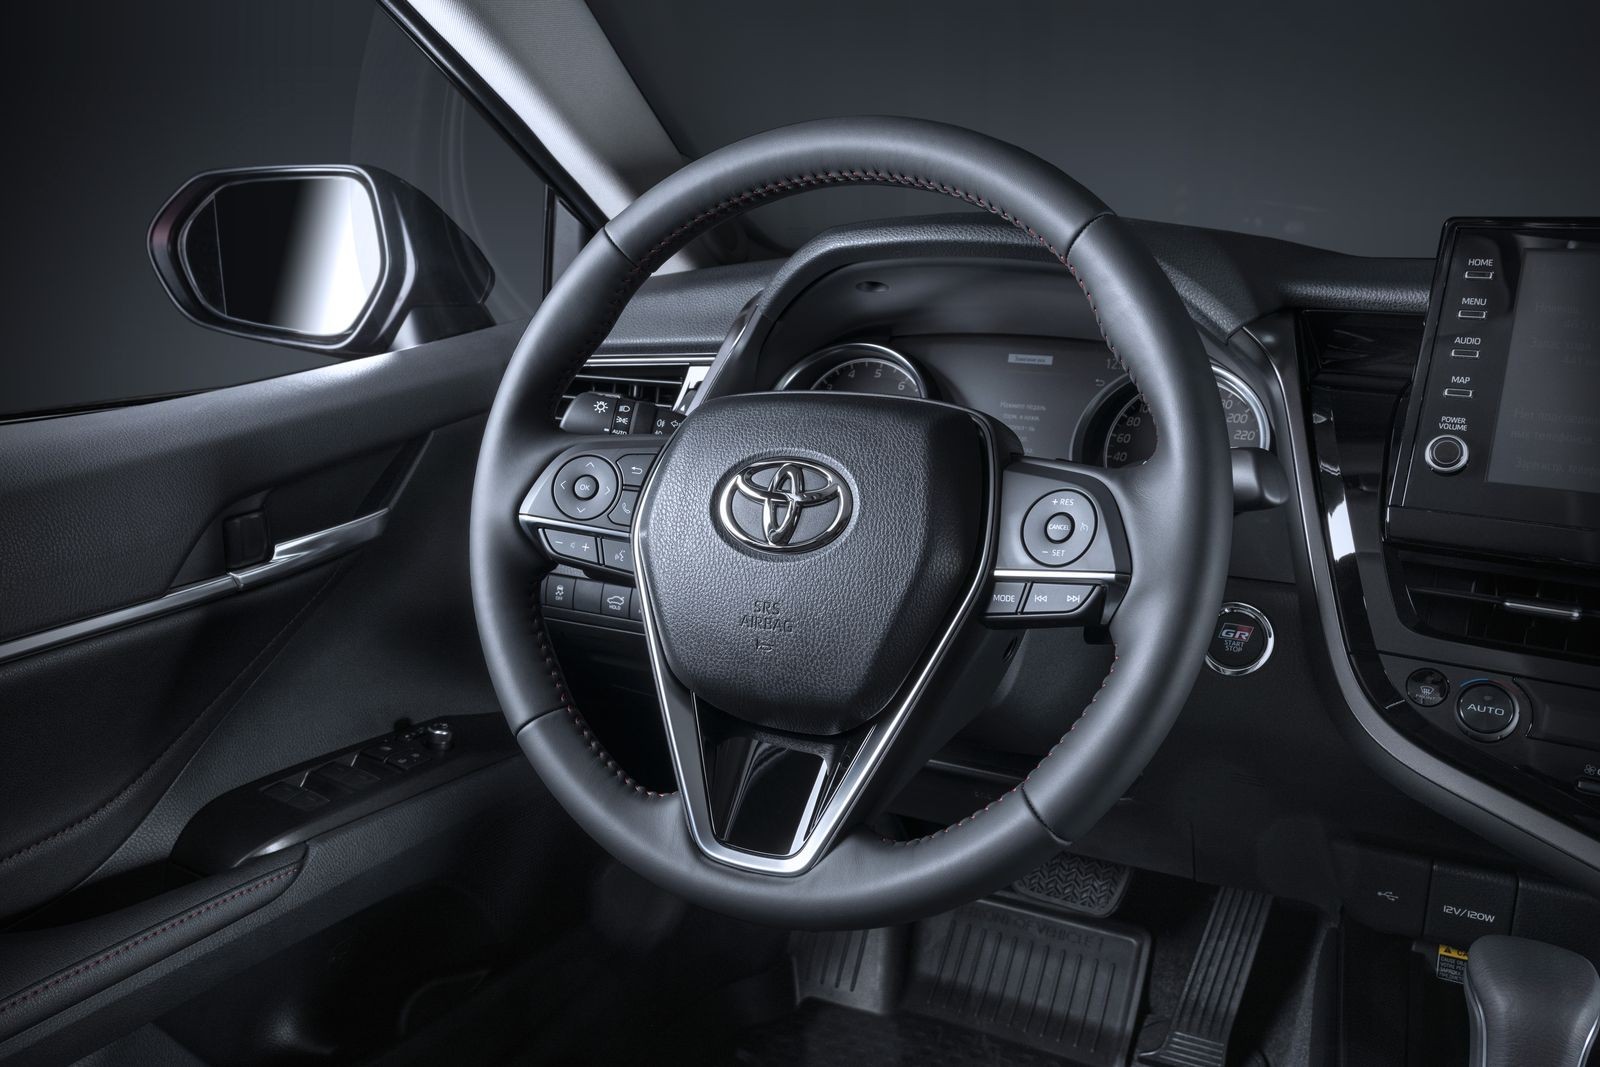 Ничего странного, только бизнес: тест-драйв обновленной Toyota Camry